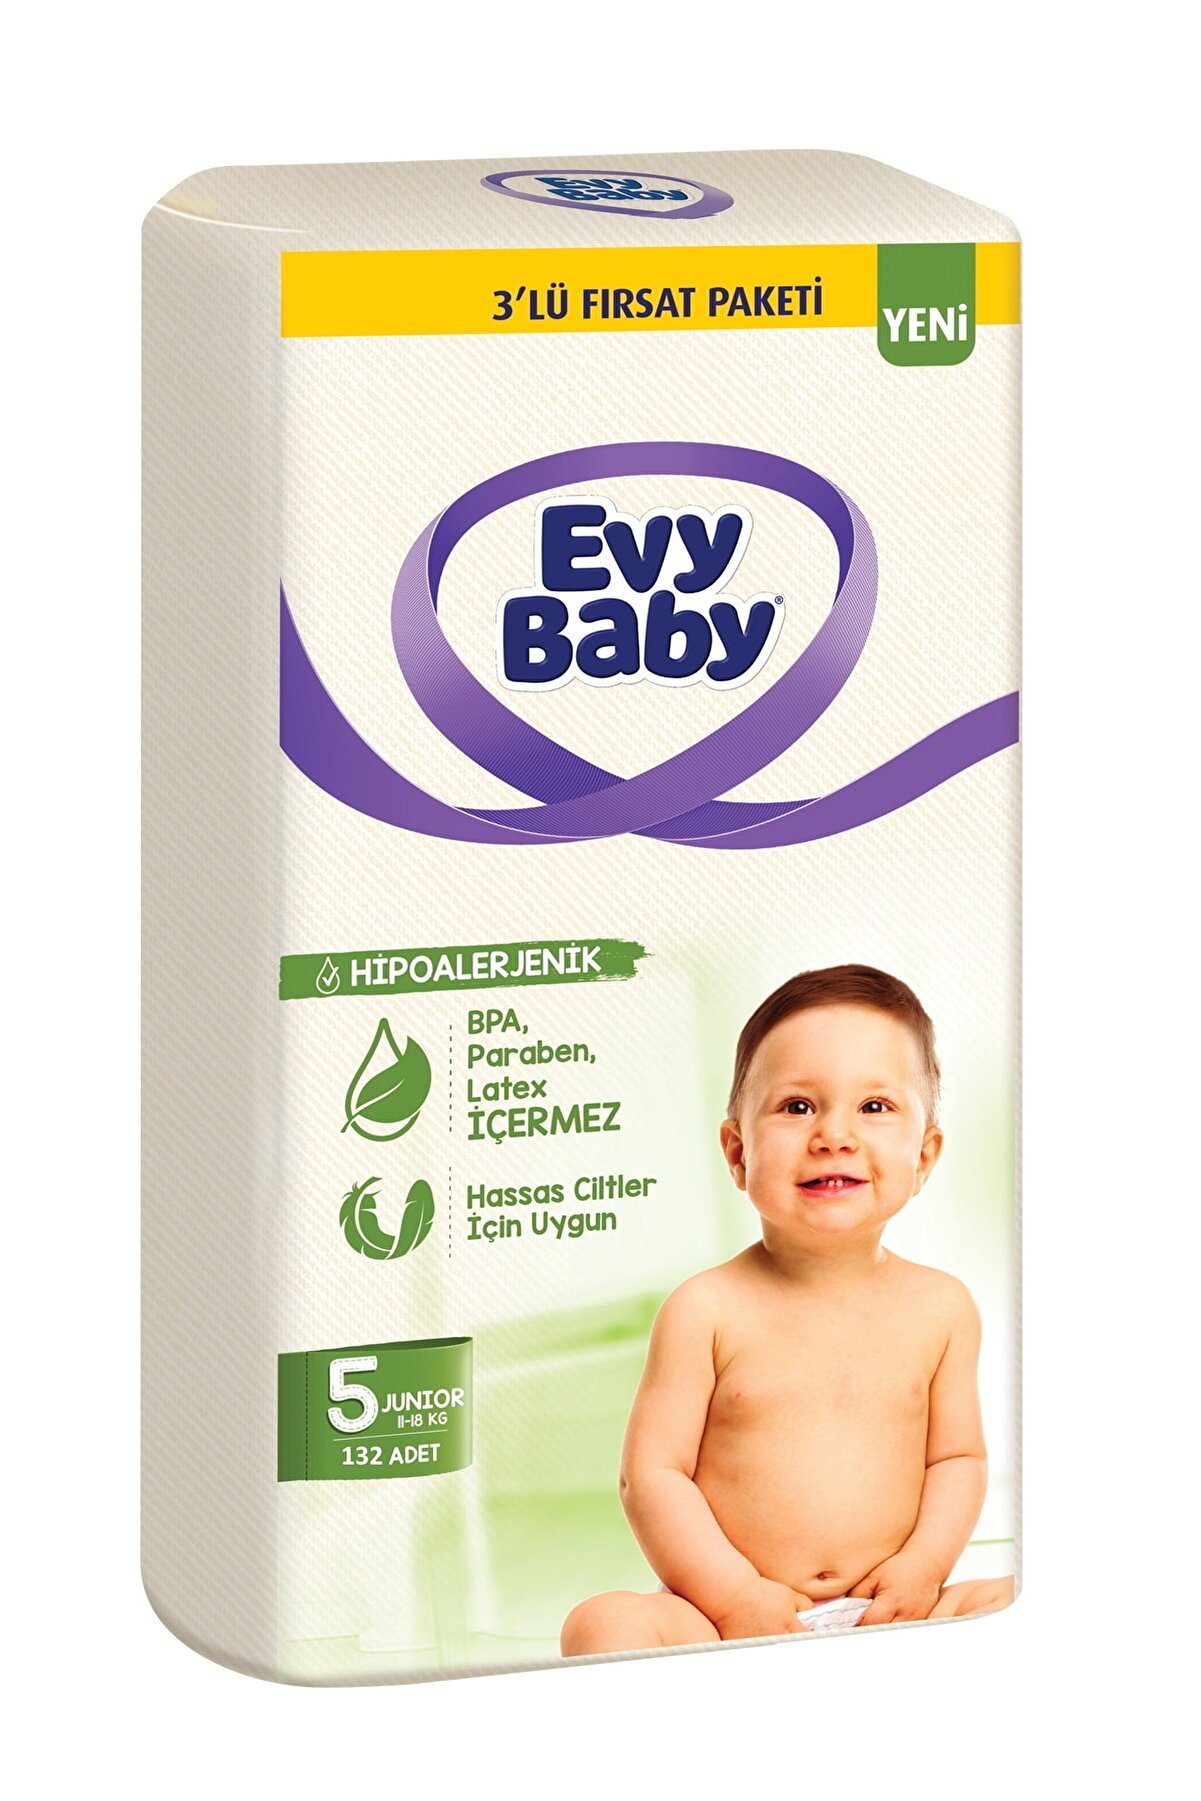 Evy Baby Bebek Bezi 3'lü Fırsat Paketi 5 Numara 132 Adet